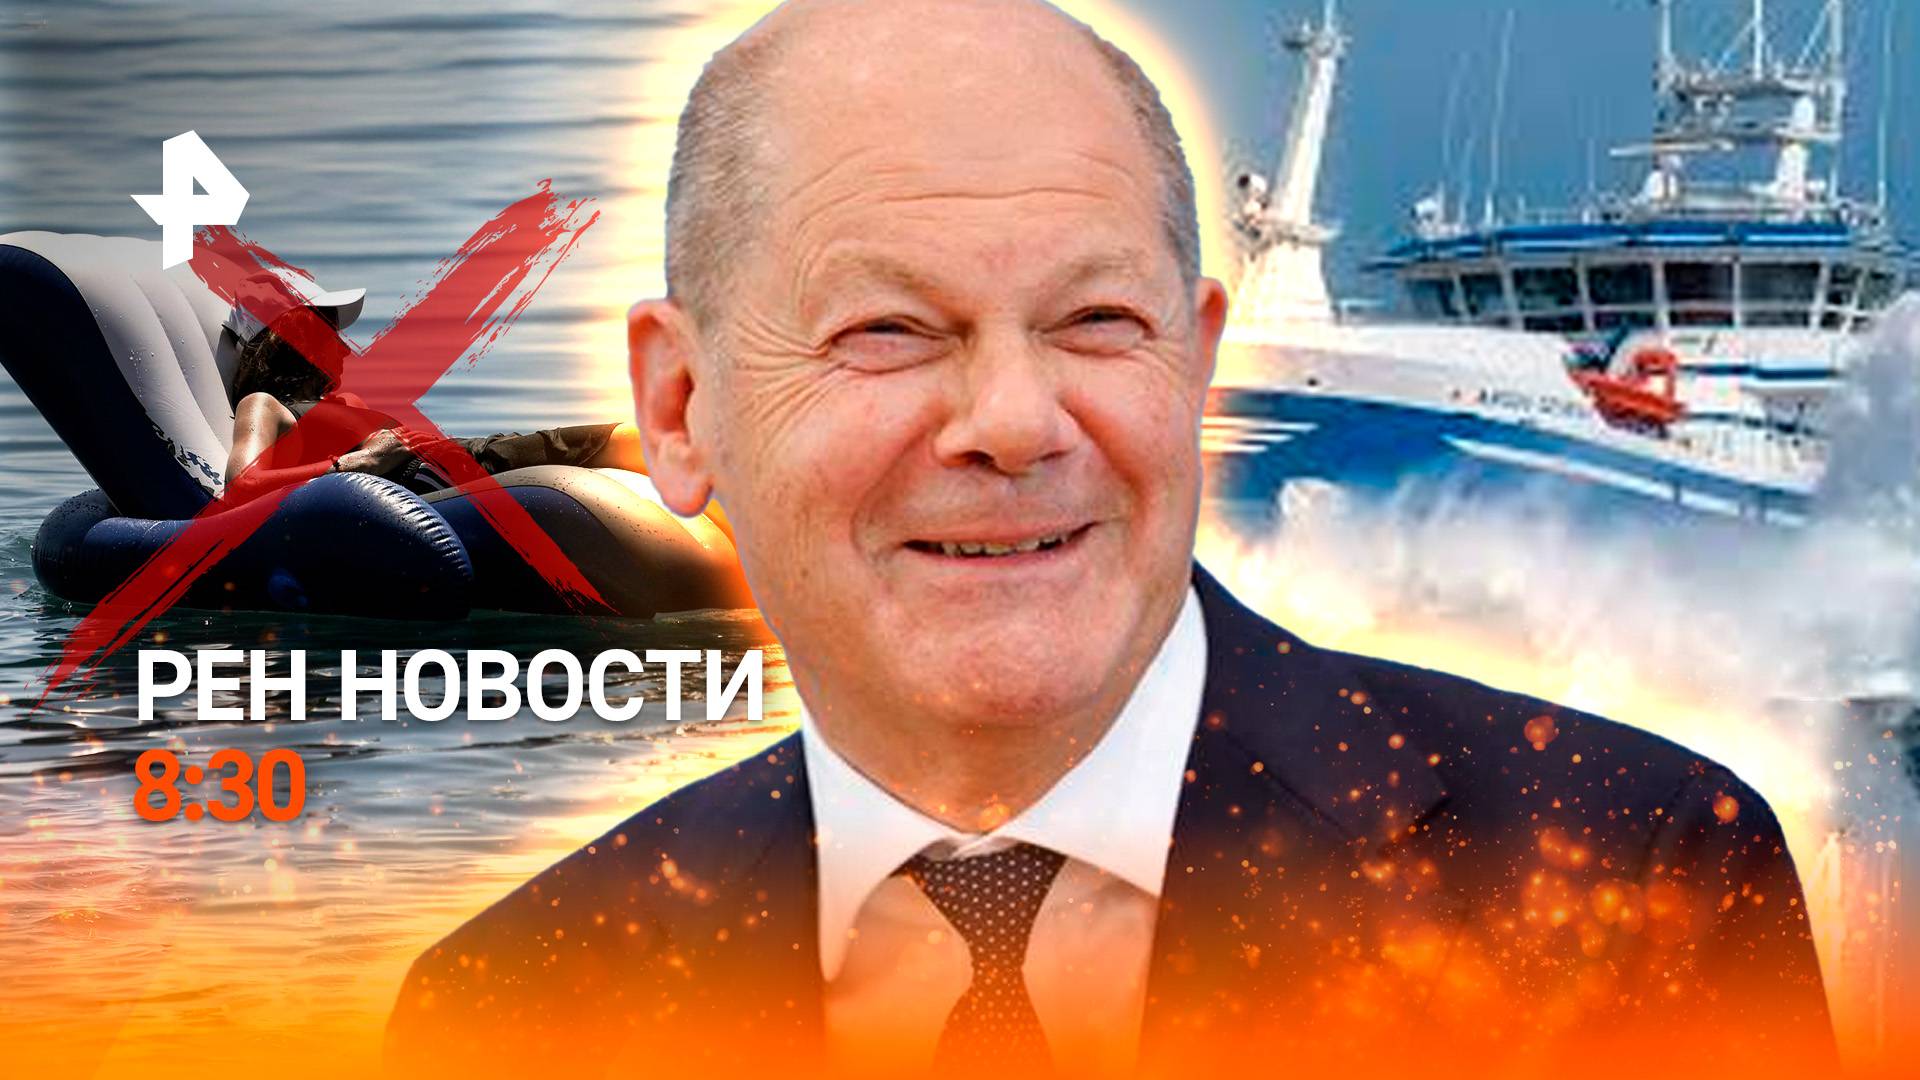 Шторм-убийца потопил корабль с россиянами / Скандал с Шольцем / РЕН Новости 24.07, 8:30